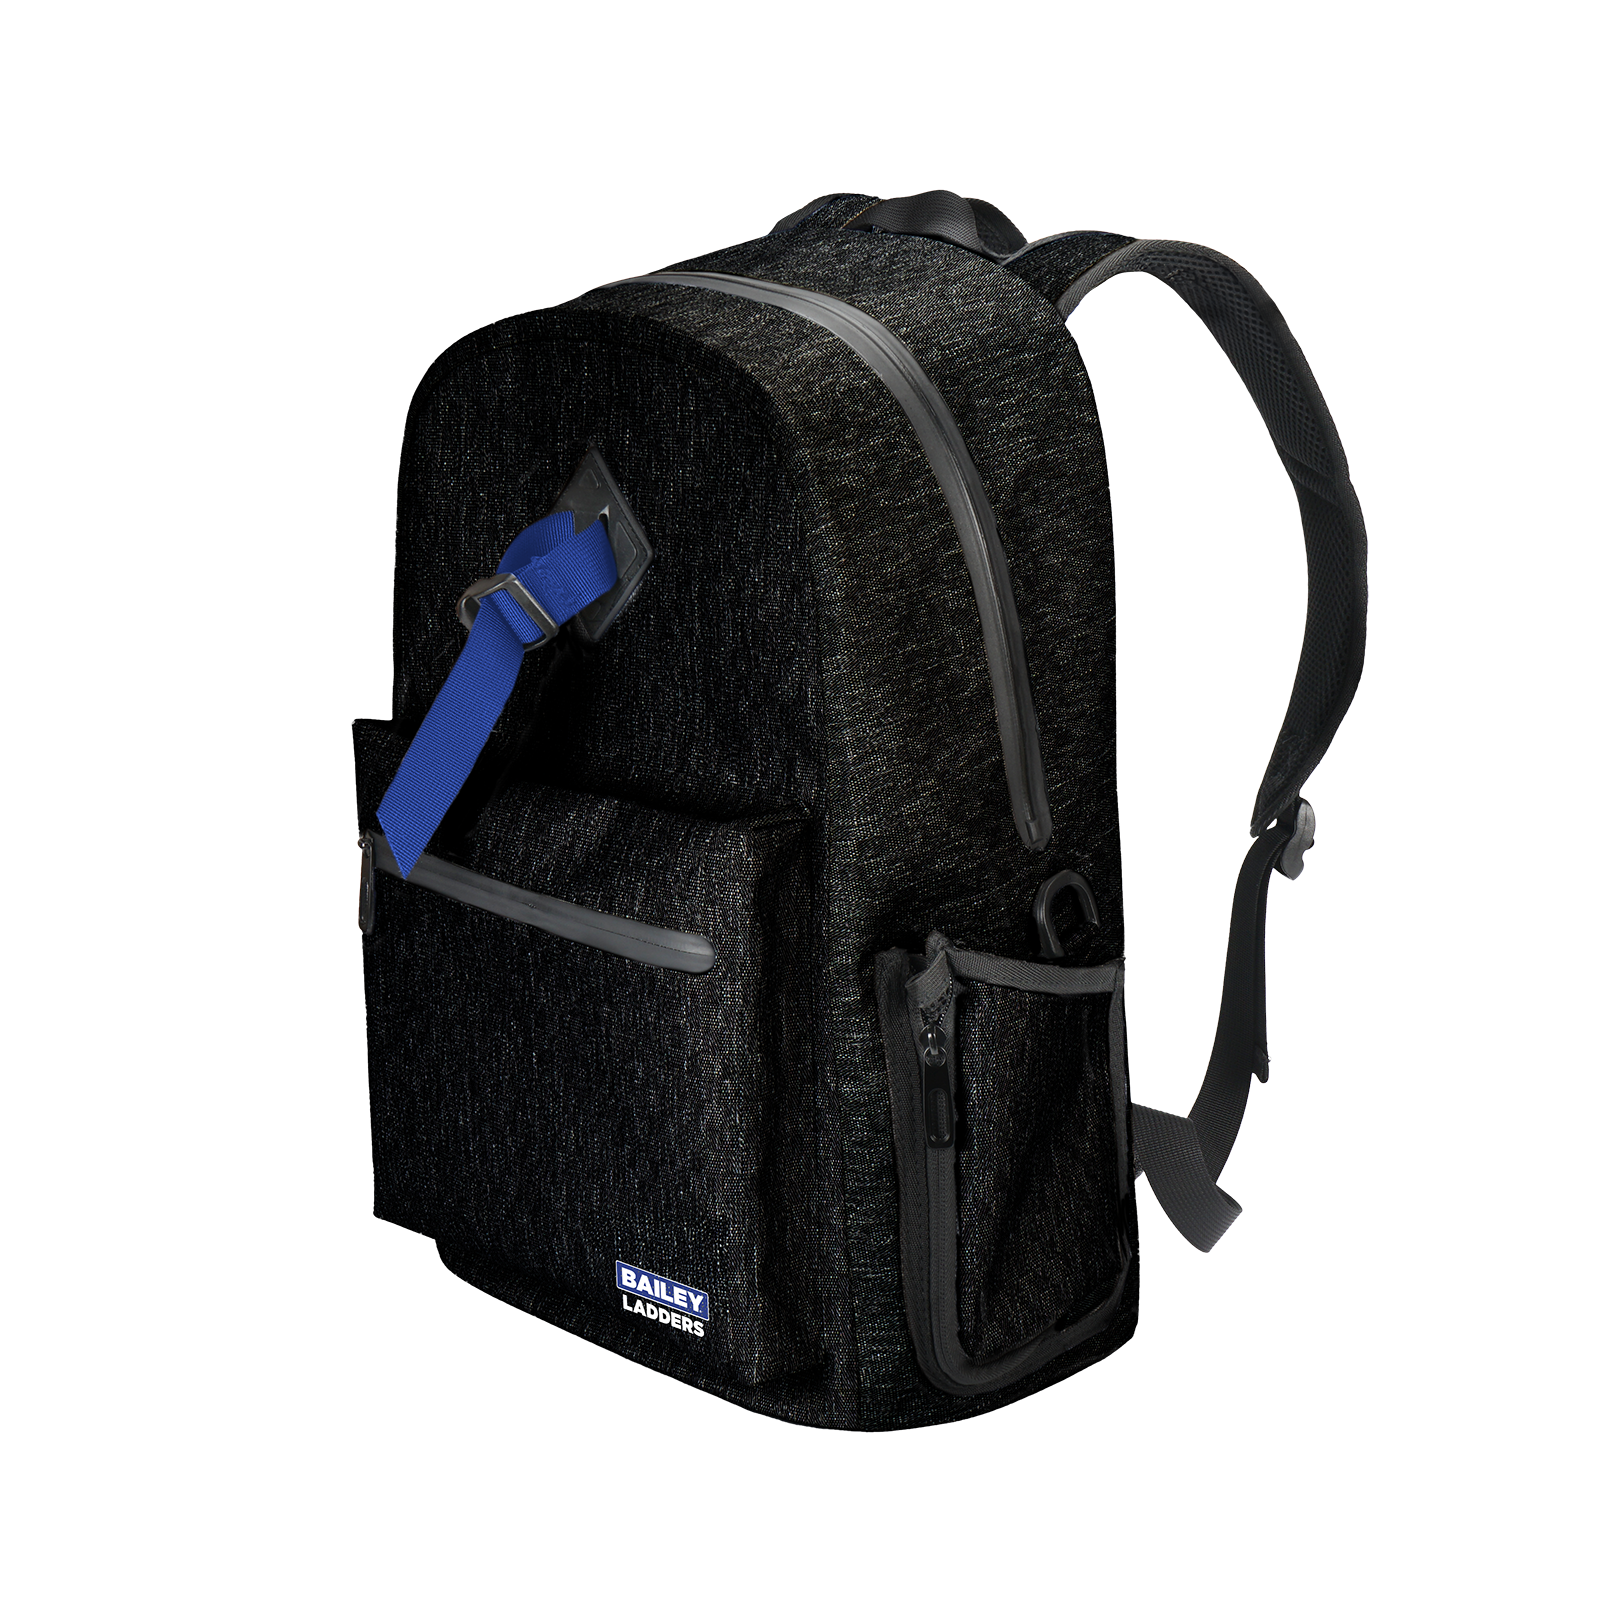 Bailey Waterproof Backpack Side